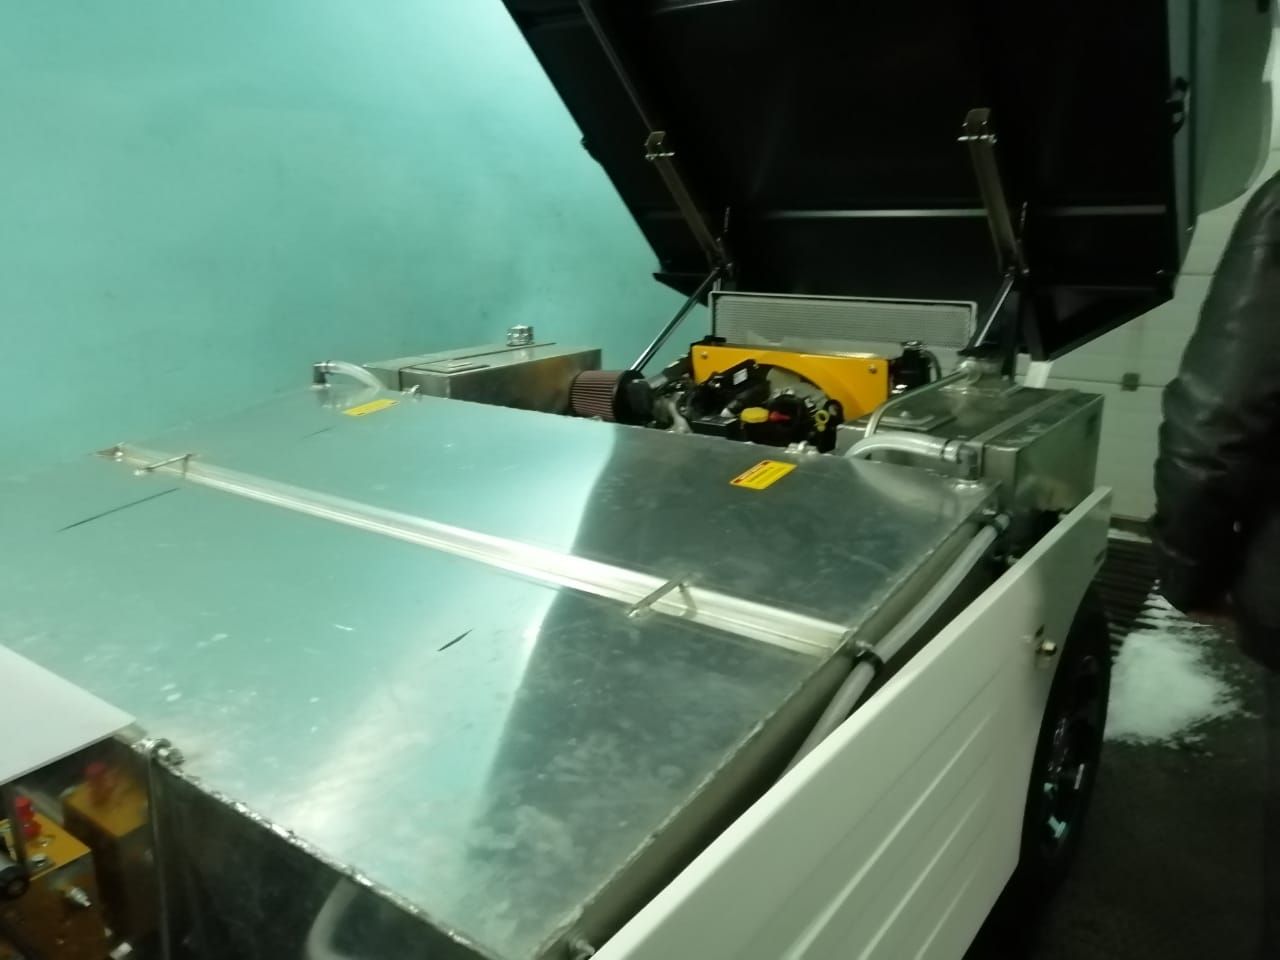 В Буинской спортивной школе обновлена ледозаливочная  машина(фото, видео)